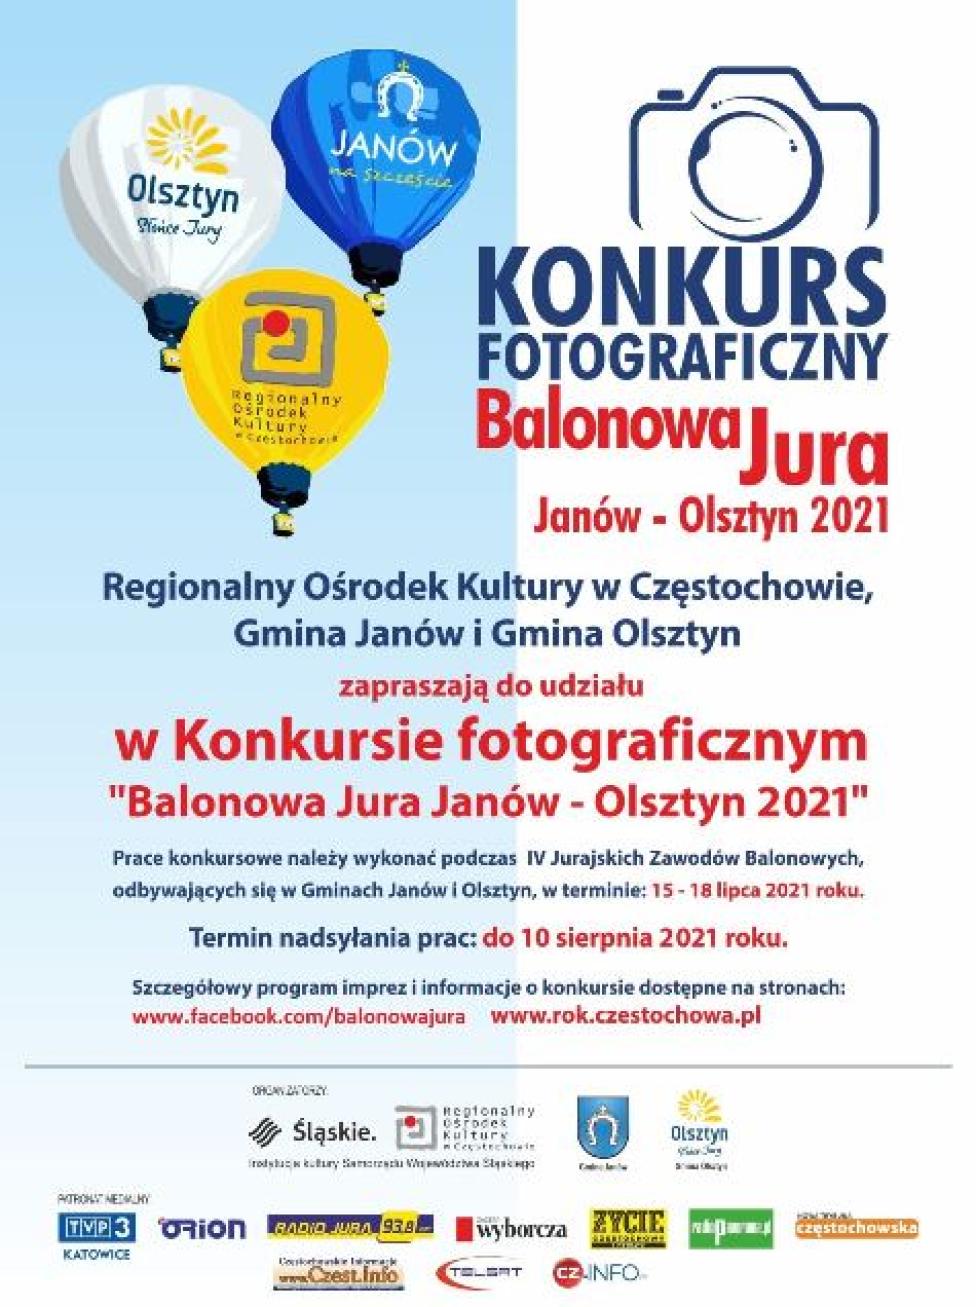 Konkurs fotograficzny "Balonowa Jura Janów – Olsztyn 2021" (fot. balonowajura.pl)